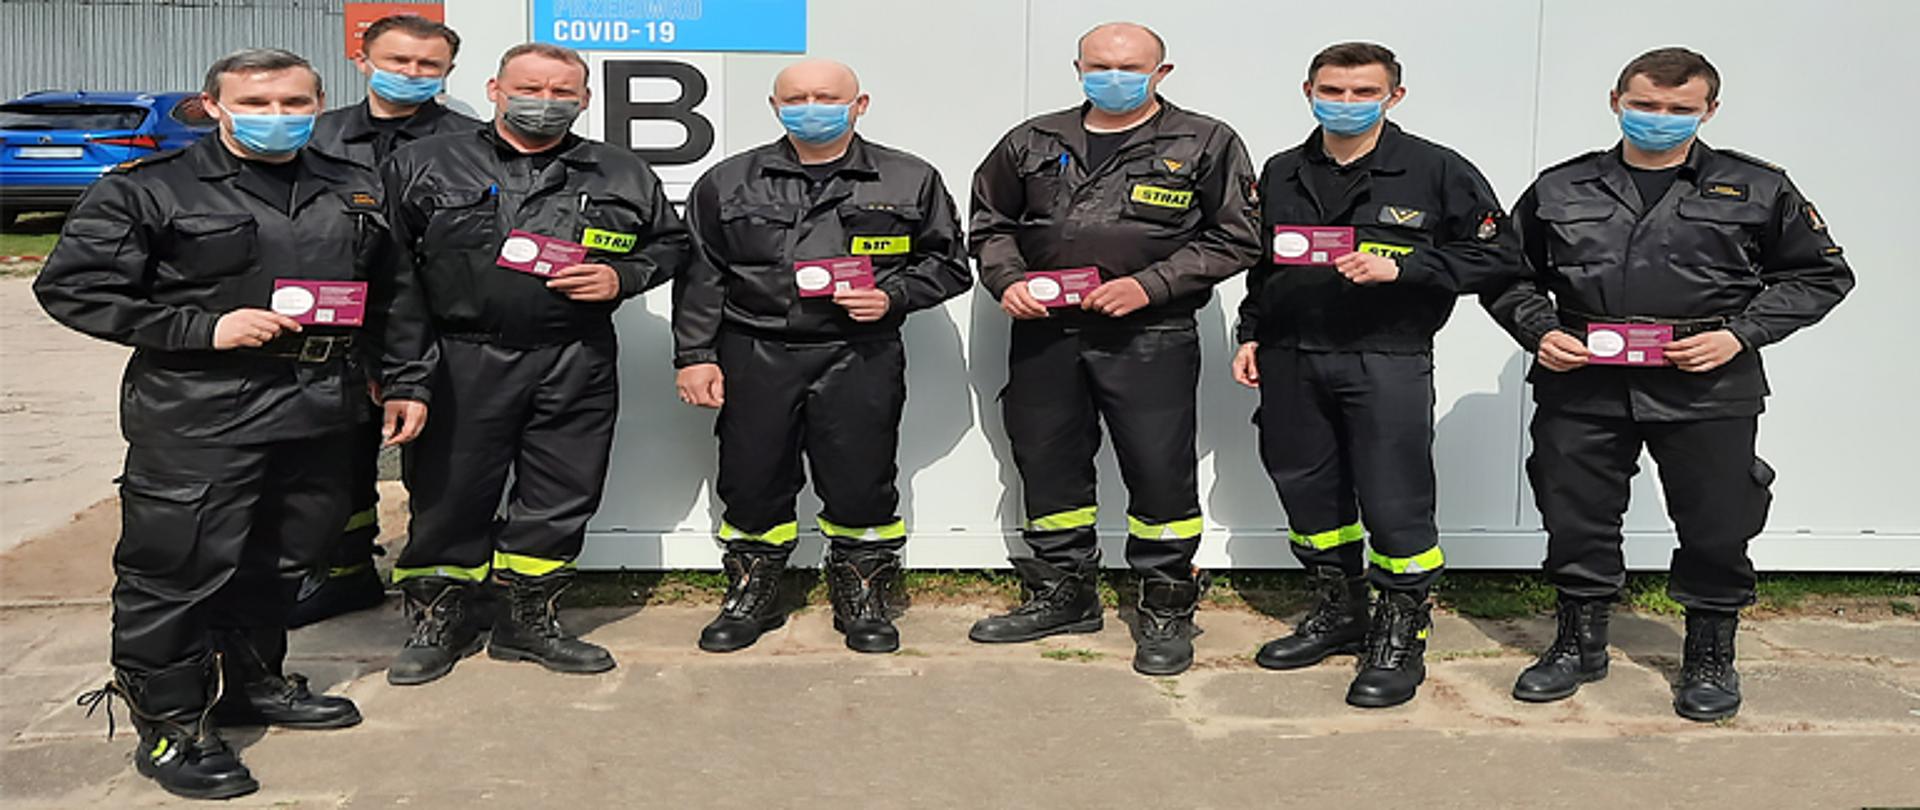 Zdjęcie przedstawia sześciu strażaków z Jednostki Ratowniczo-Gaśniczej w Łowiczu oraz zastępcę komendanta powiatowego tuż po zaszczepieniu przeciw COVID-19 trzymających w ręku zaświadczenie potwierdzające zaszczepienie przeciwko wirusowi Sars-Cov-2. Ubrani są w ubrania koszarowe koloru czarnego, na twarzy mają maseczkę, za nimi budynek koloru szarego z napisem Punkt szczepień przeciwko Covid-19 z dużą widoczną literą B, w tle budynek administracyjny.